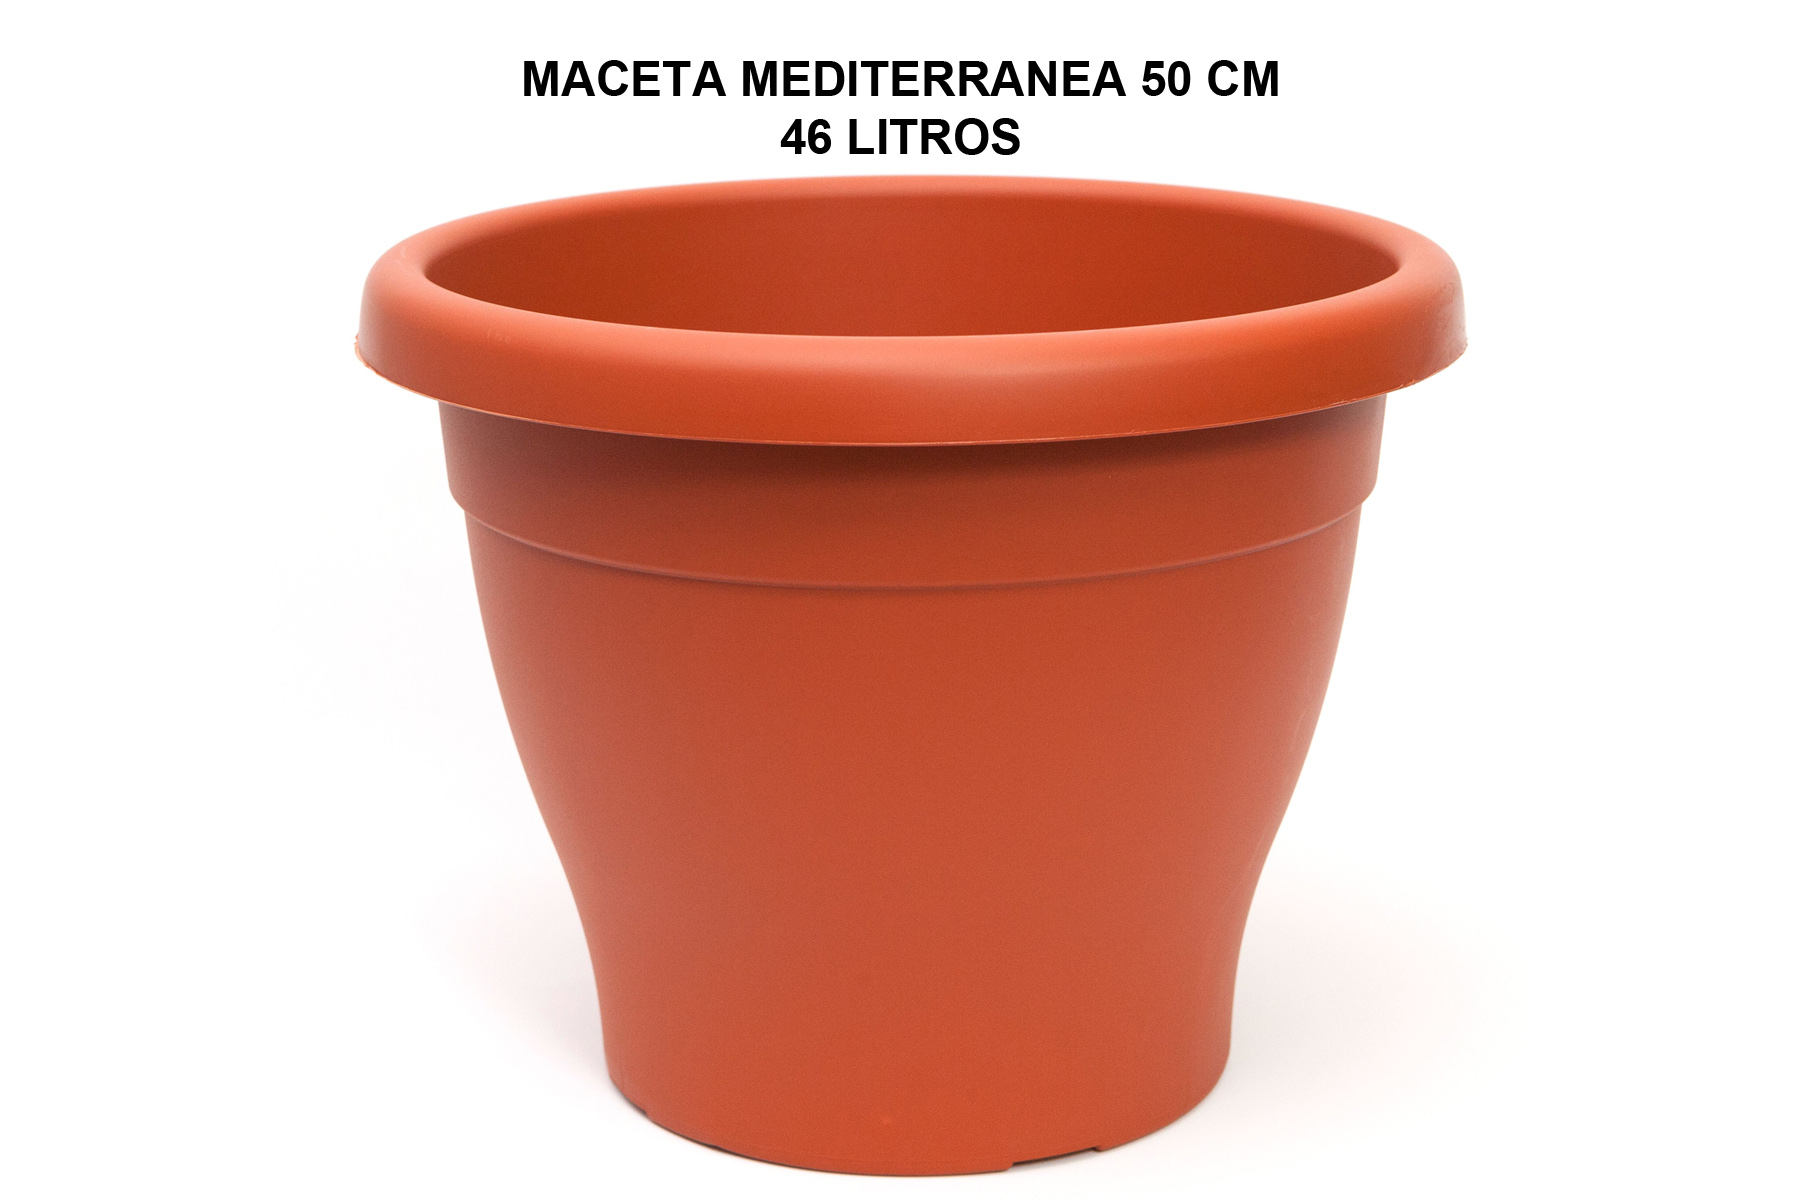 MACETA MEDITERRANEA 50 CM P